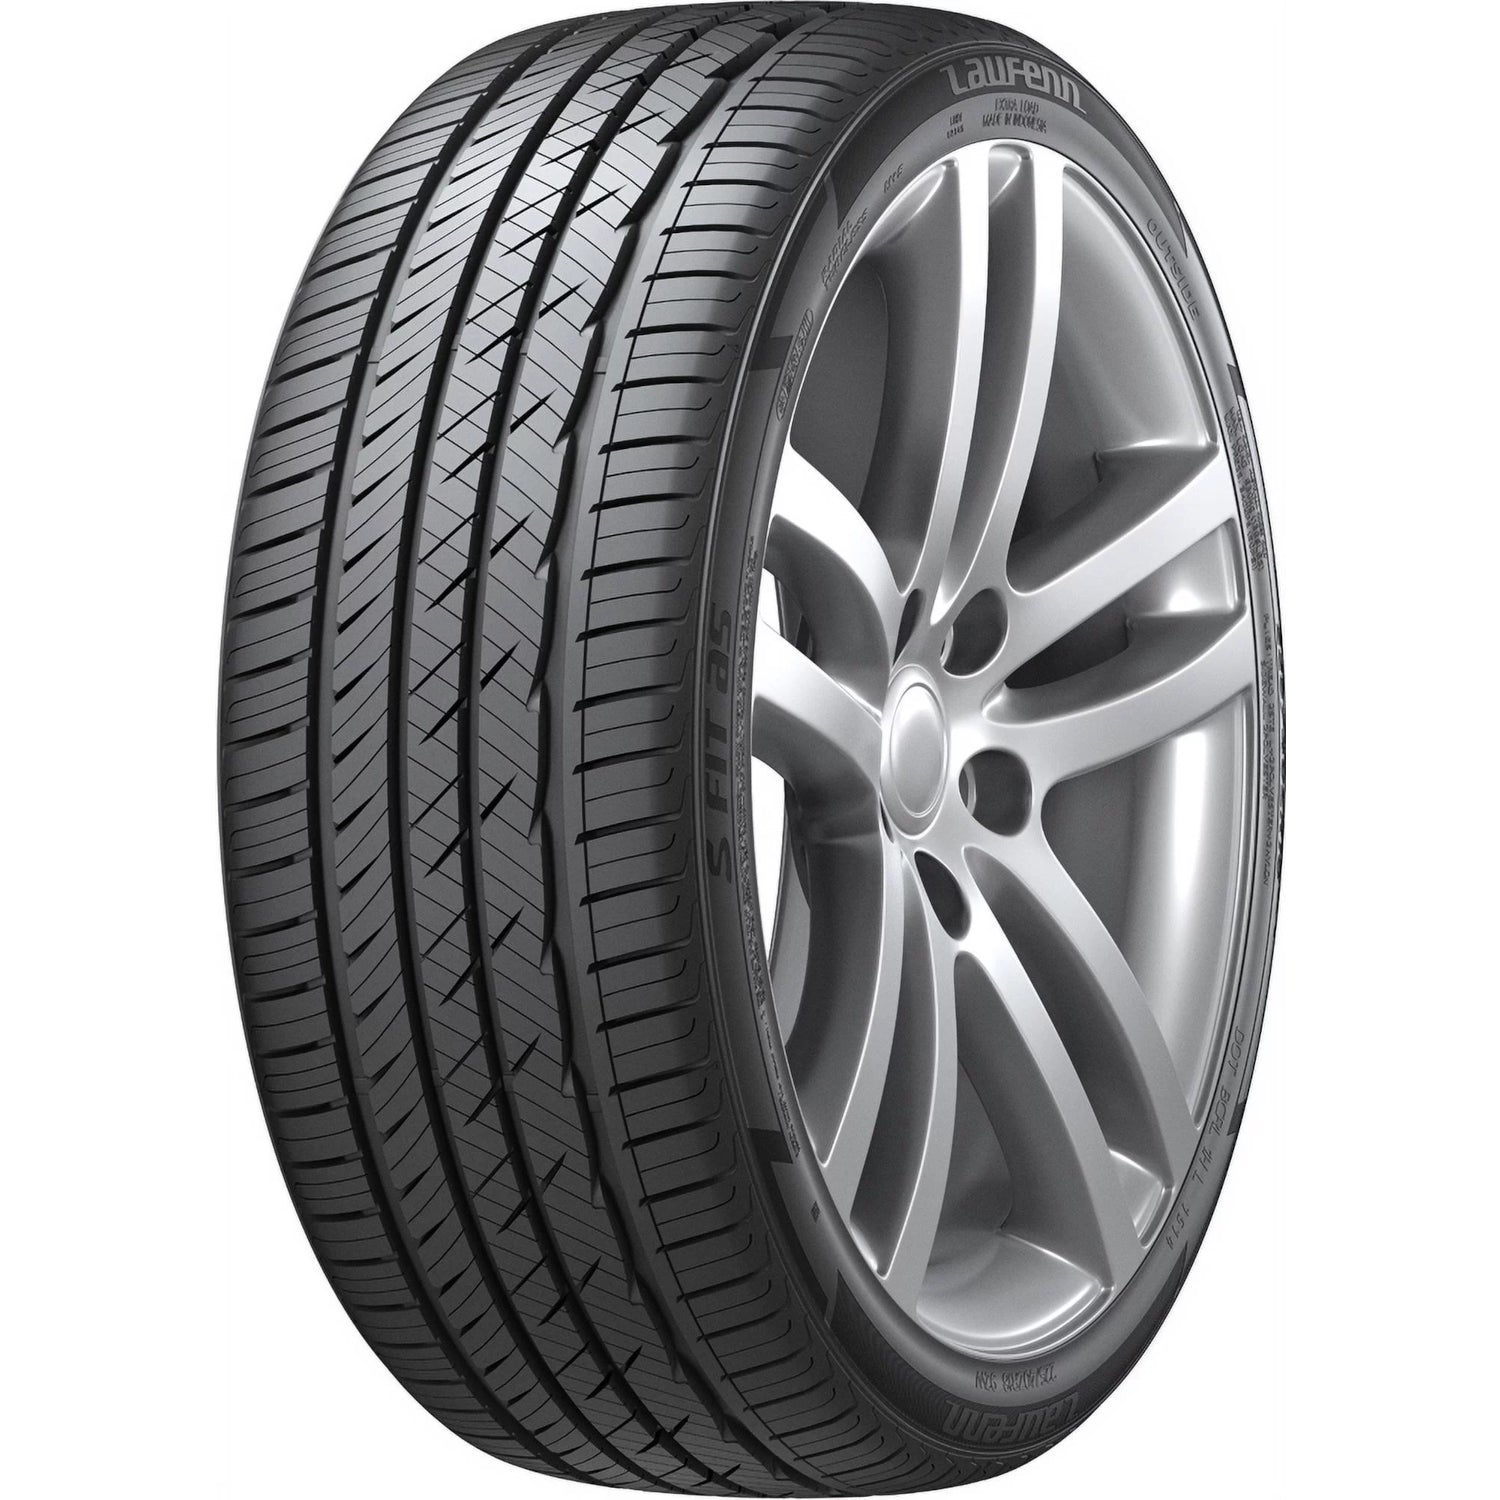 LAUFENN S FIT AS 235/45ZR17 (25.3X9.3R 17) Tires